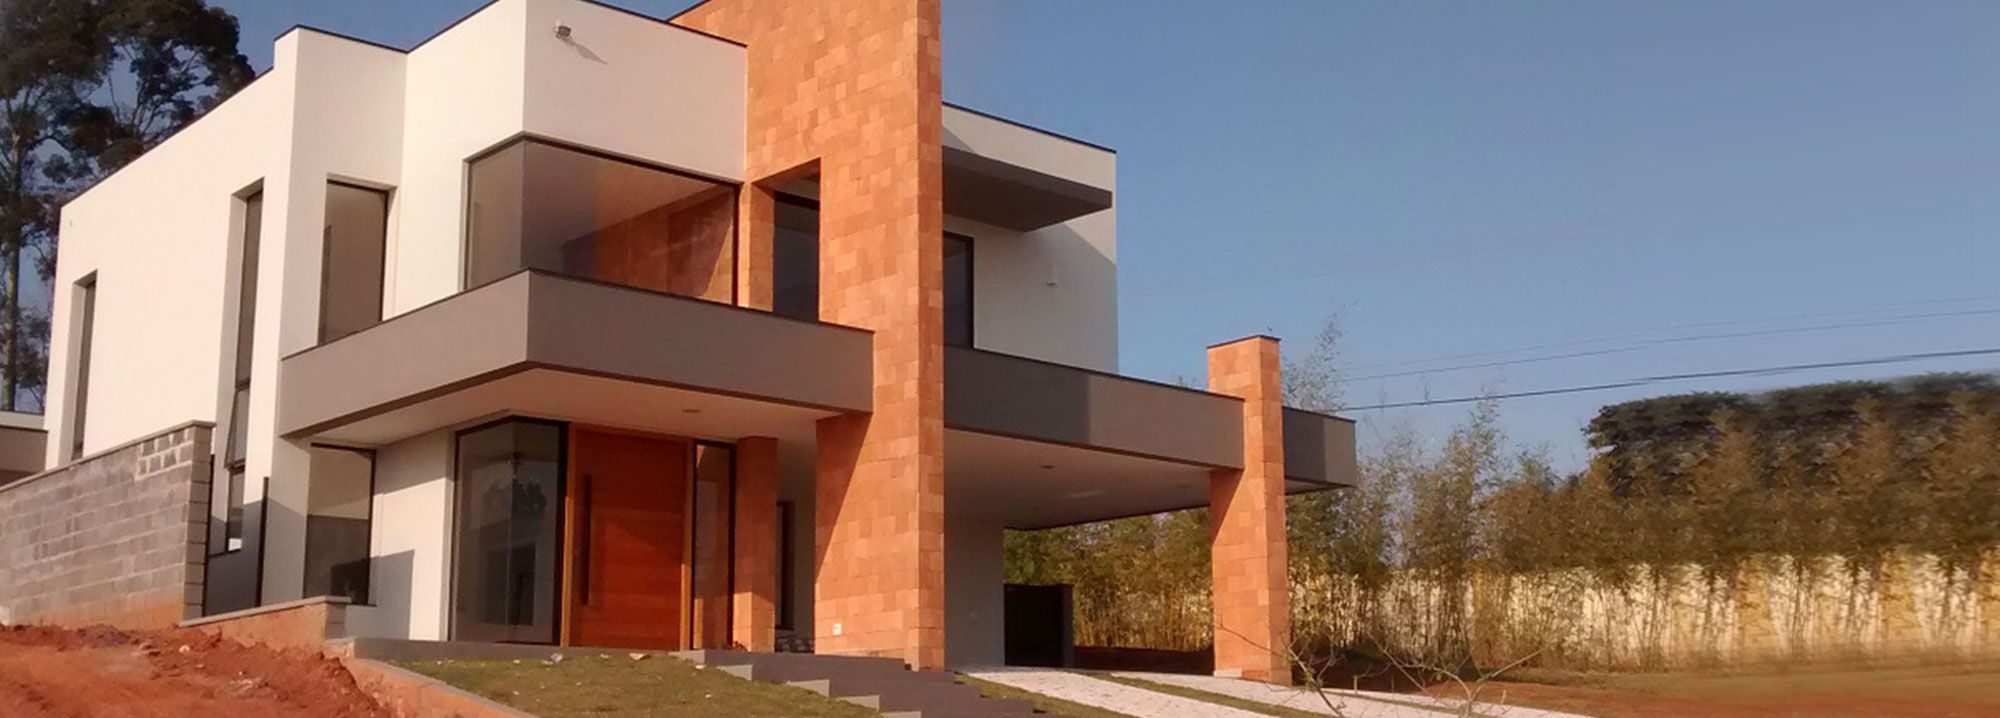 Projeto e Construção Residencial - Jundiaí - 195,68 m² - Rodrigo Zambotto  Pastro